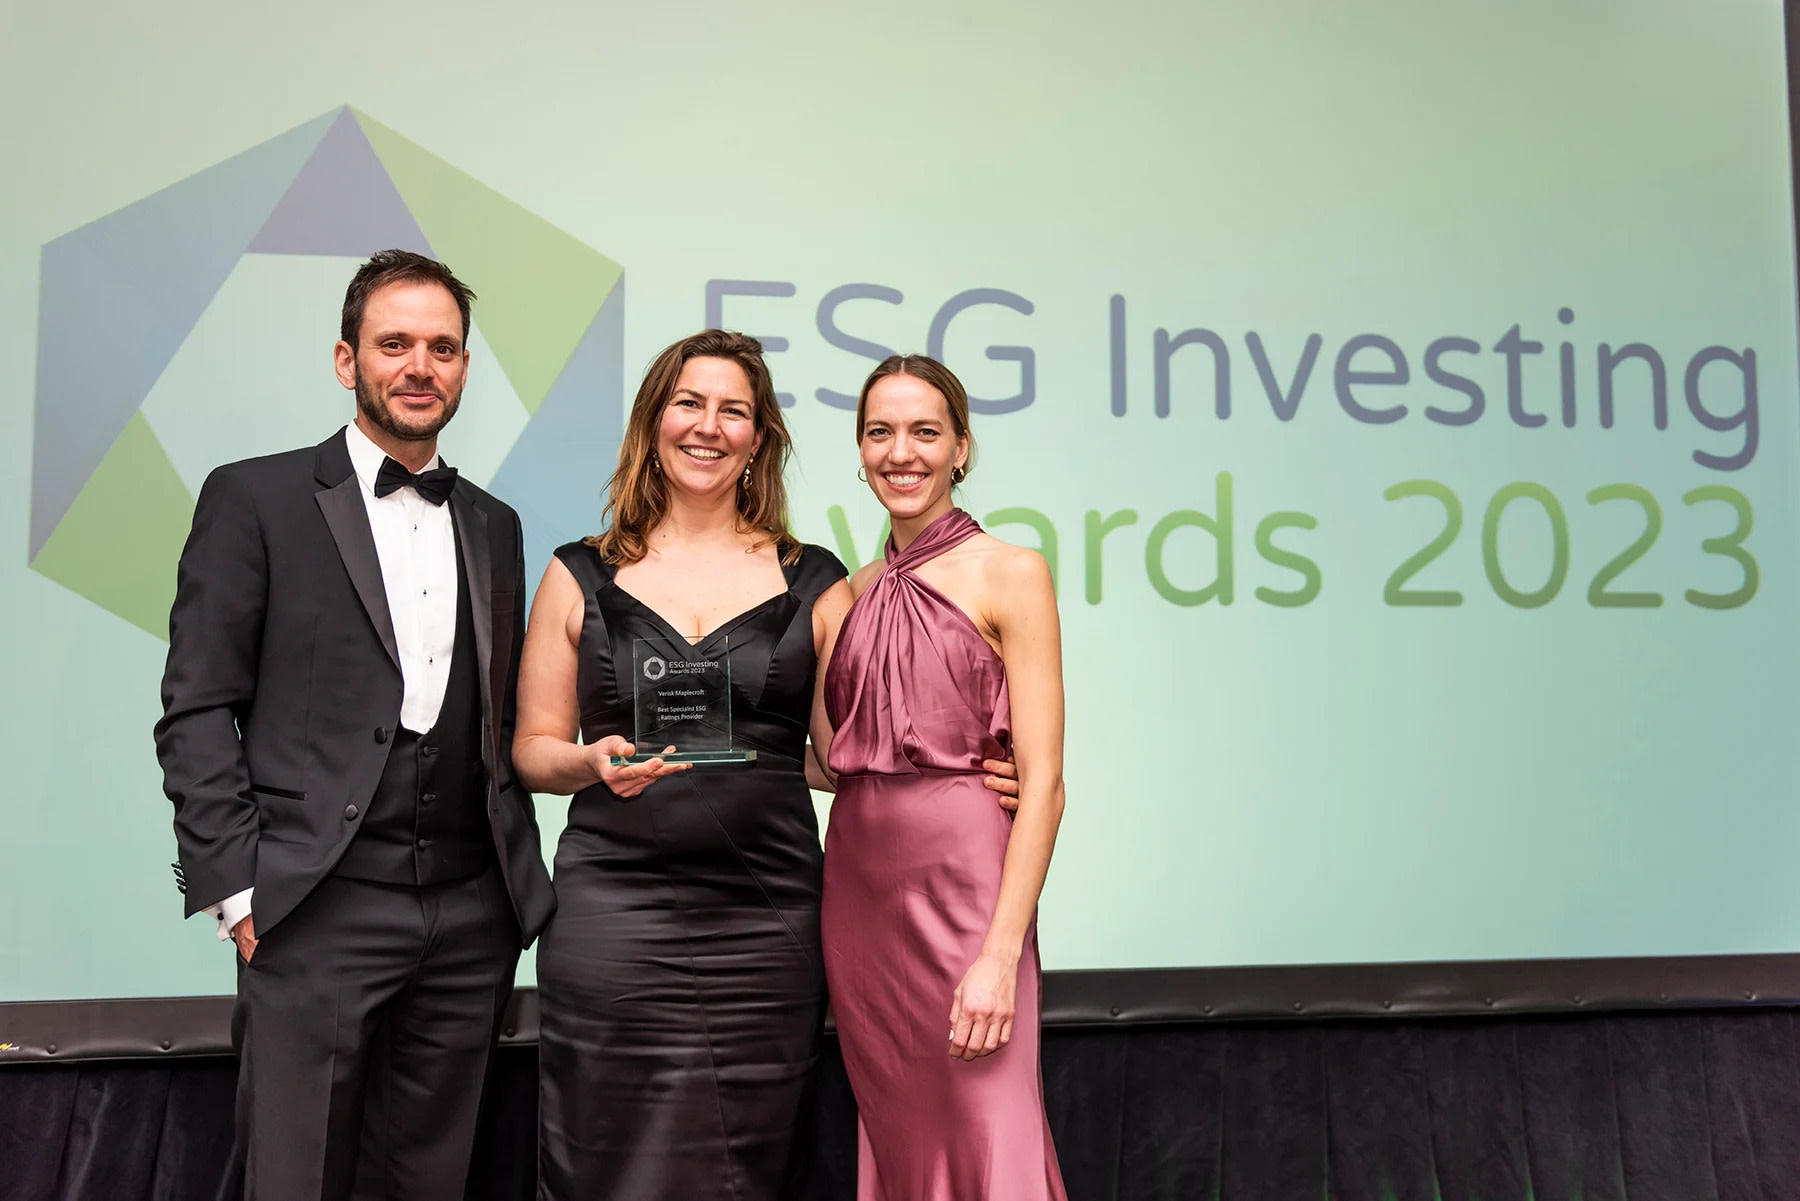 Verisk Maplecroft: Best ESG Ratings Provider